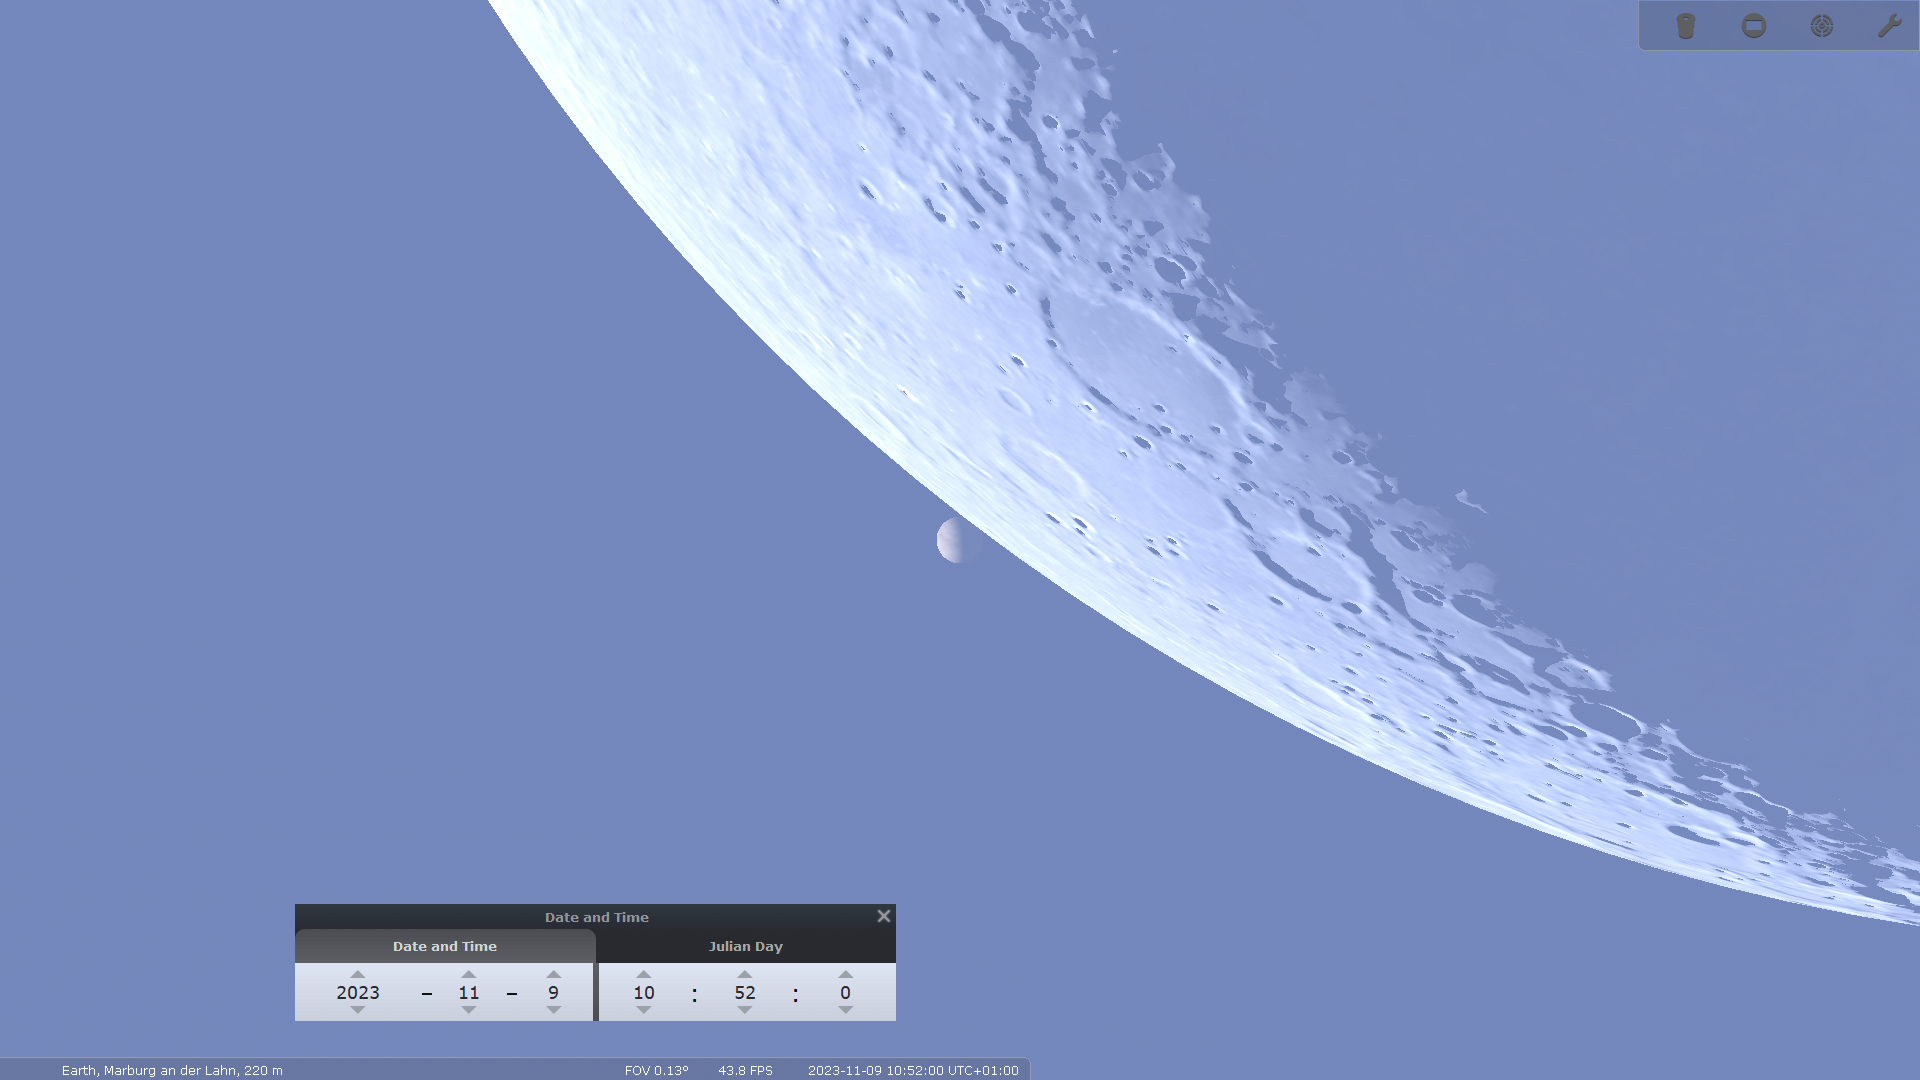 Die Bedeckung der Venus beginnt von Marburg aus beobachtet um 10:51:55 Uhr.